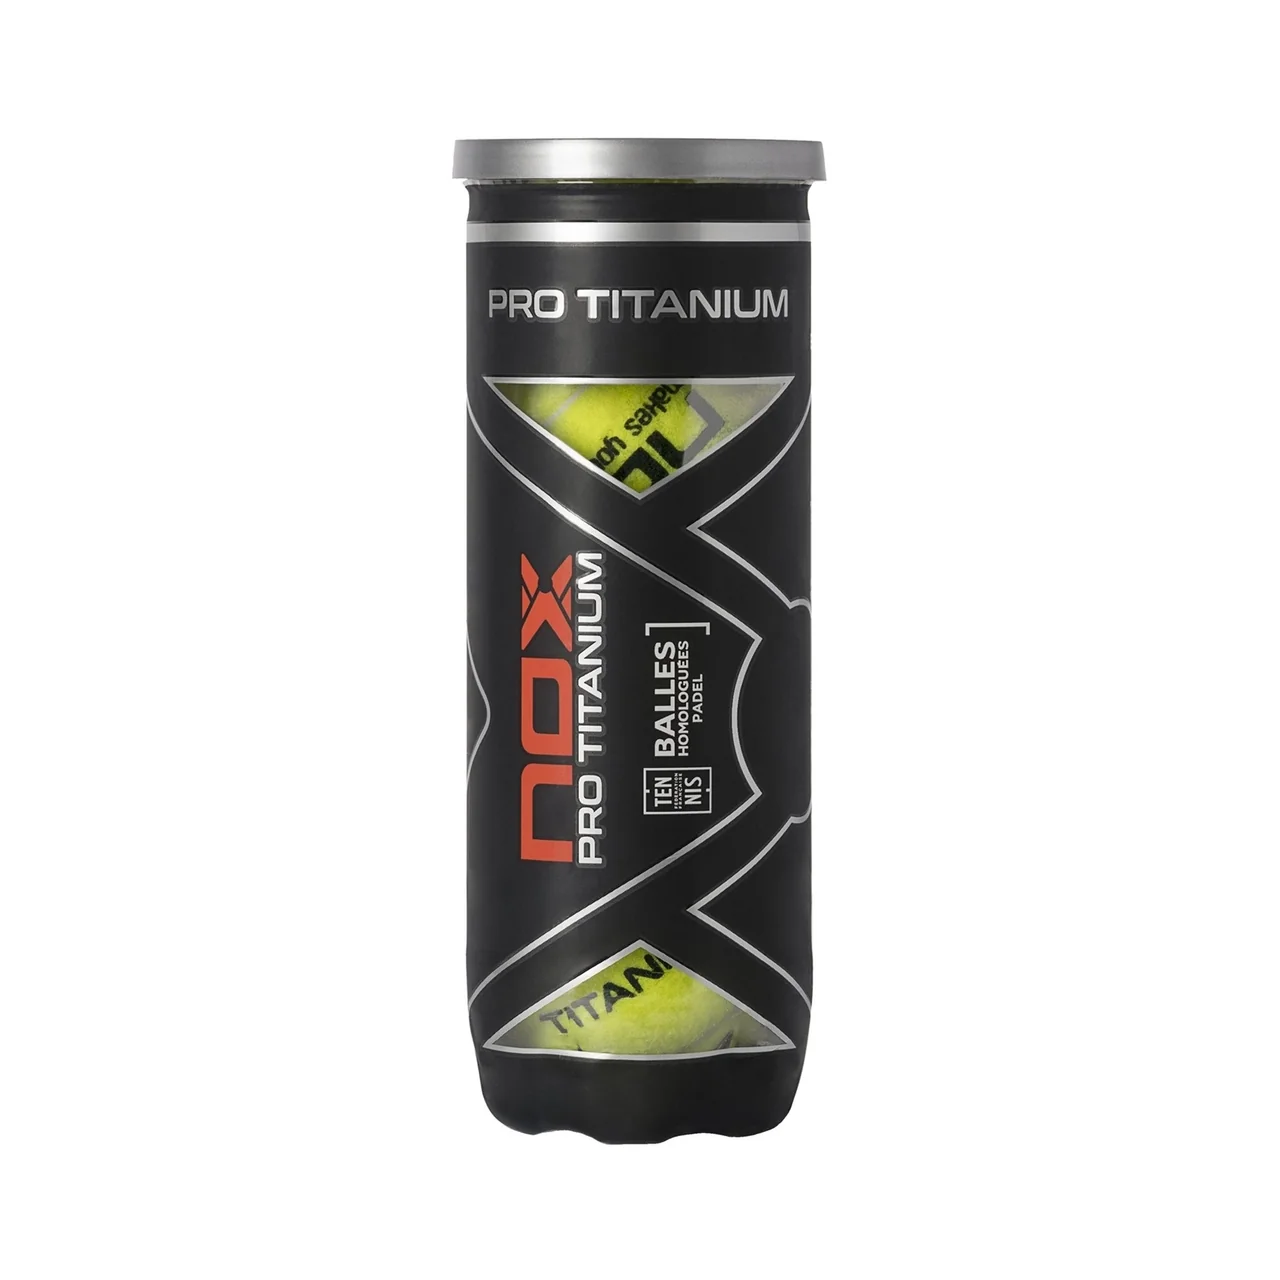 Nox Pro Titanium - 3 tubes